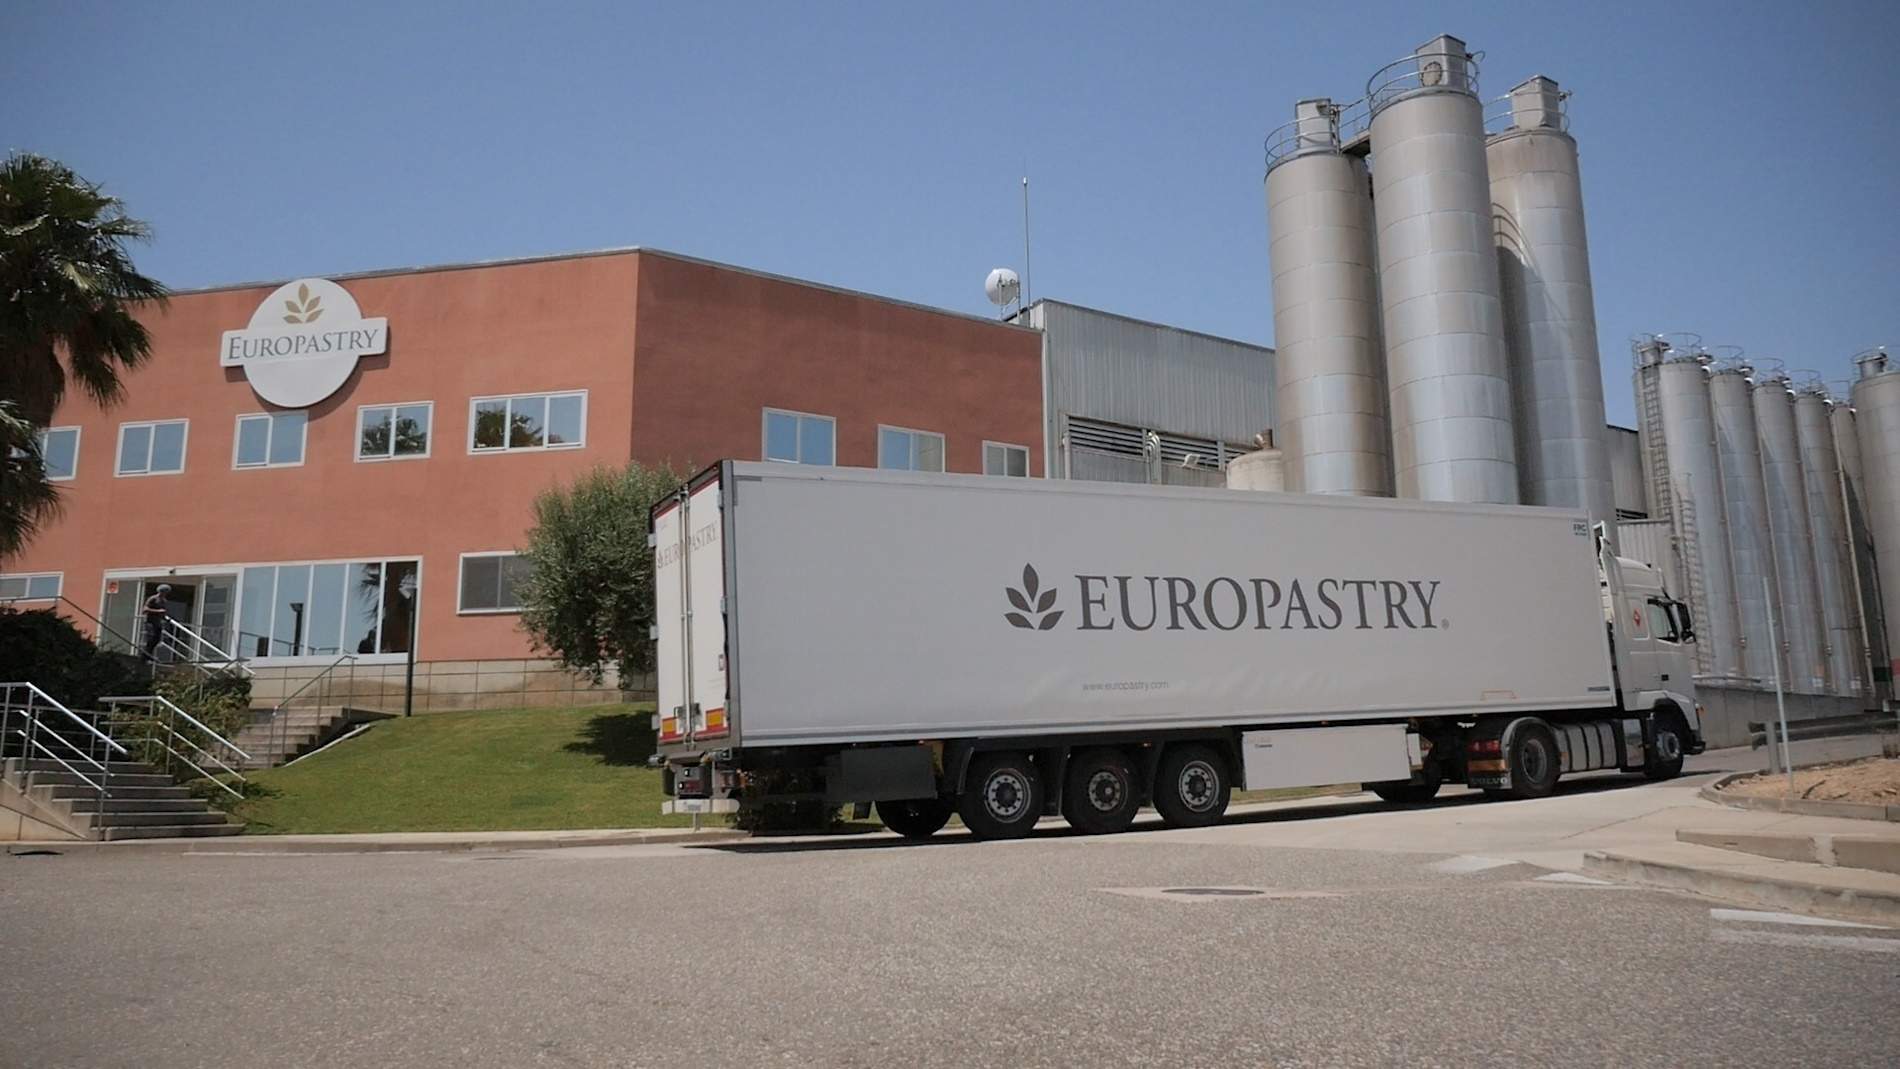 Europastry reduce un 62% su huella de carbono desde 2019